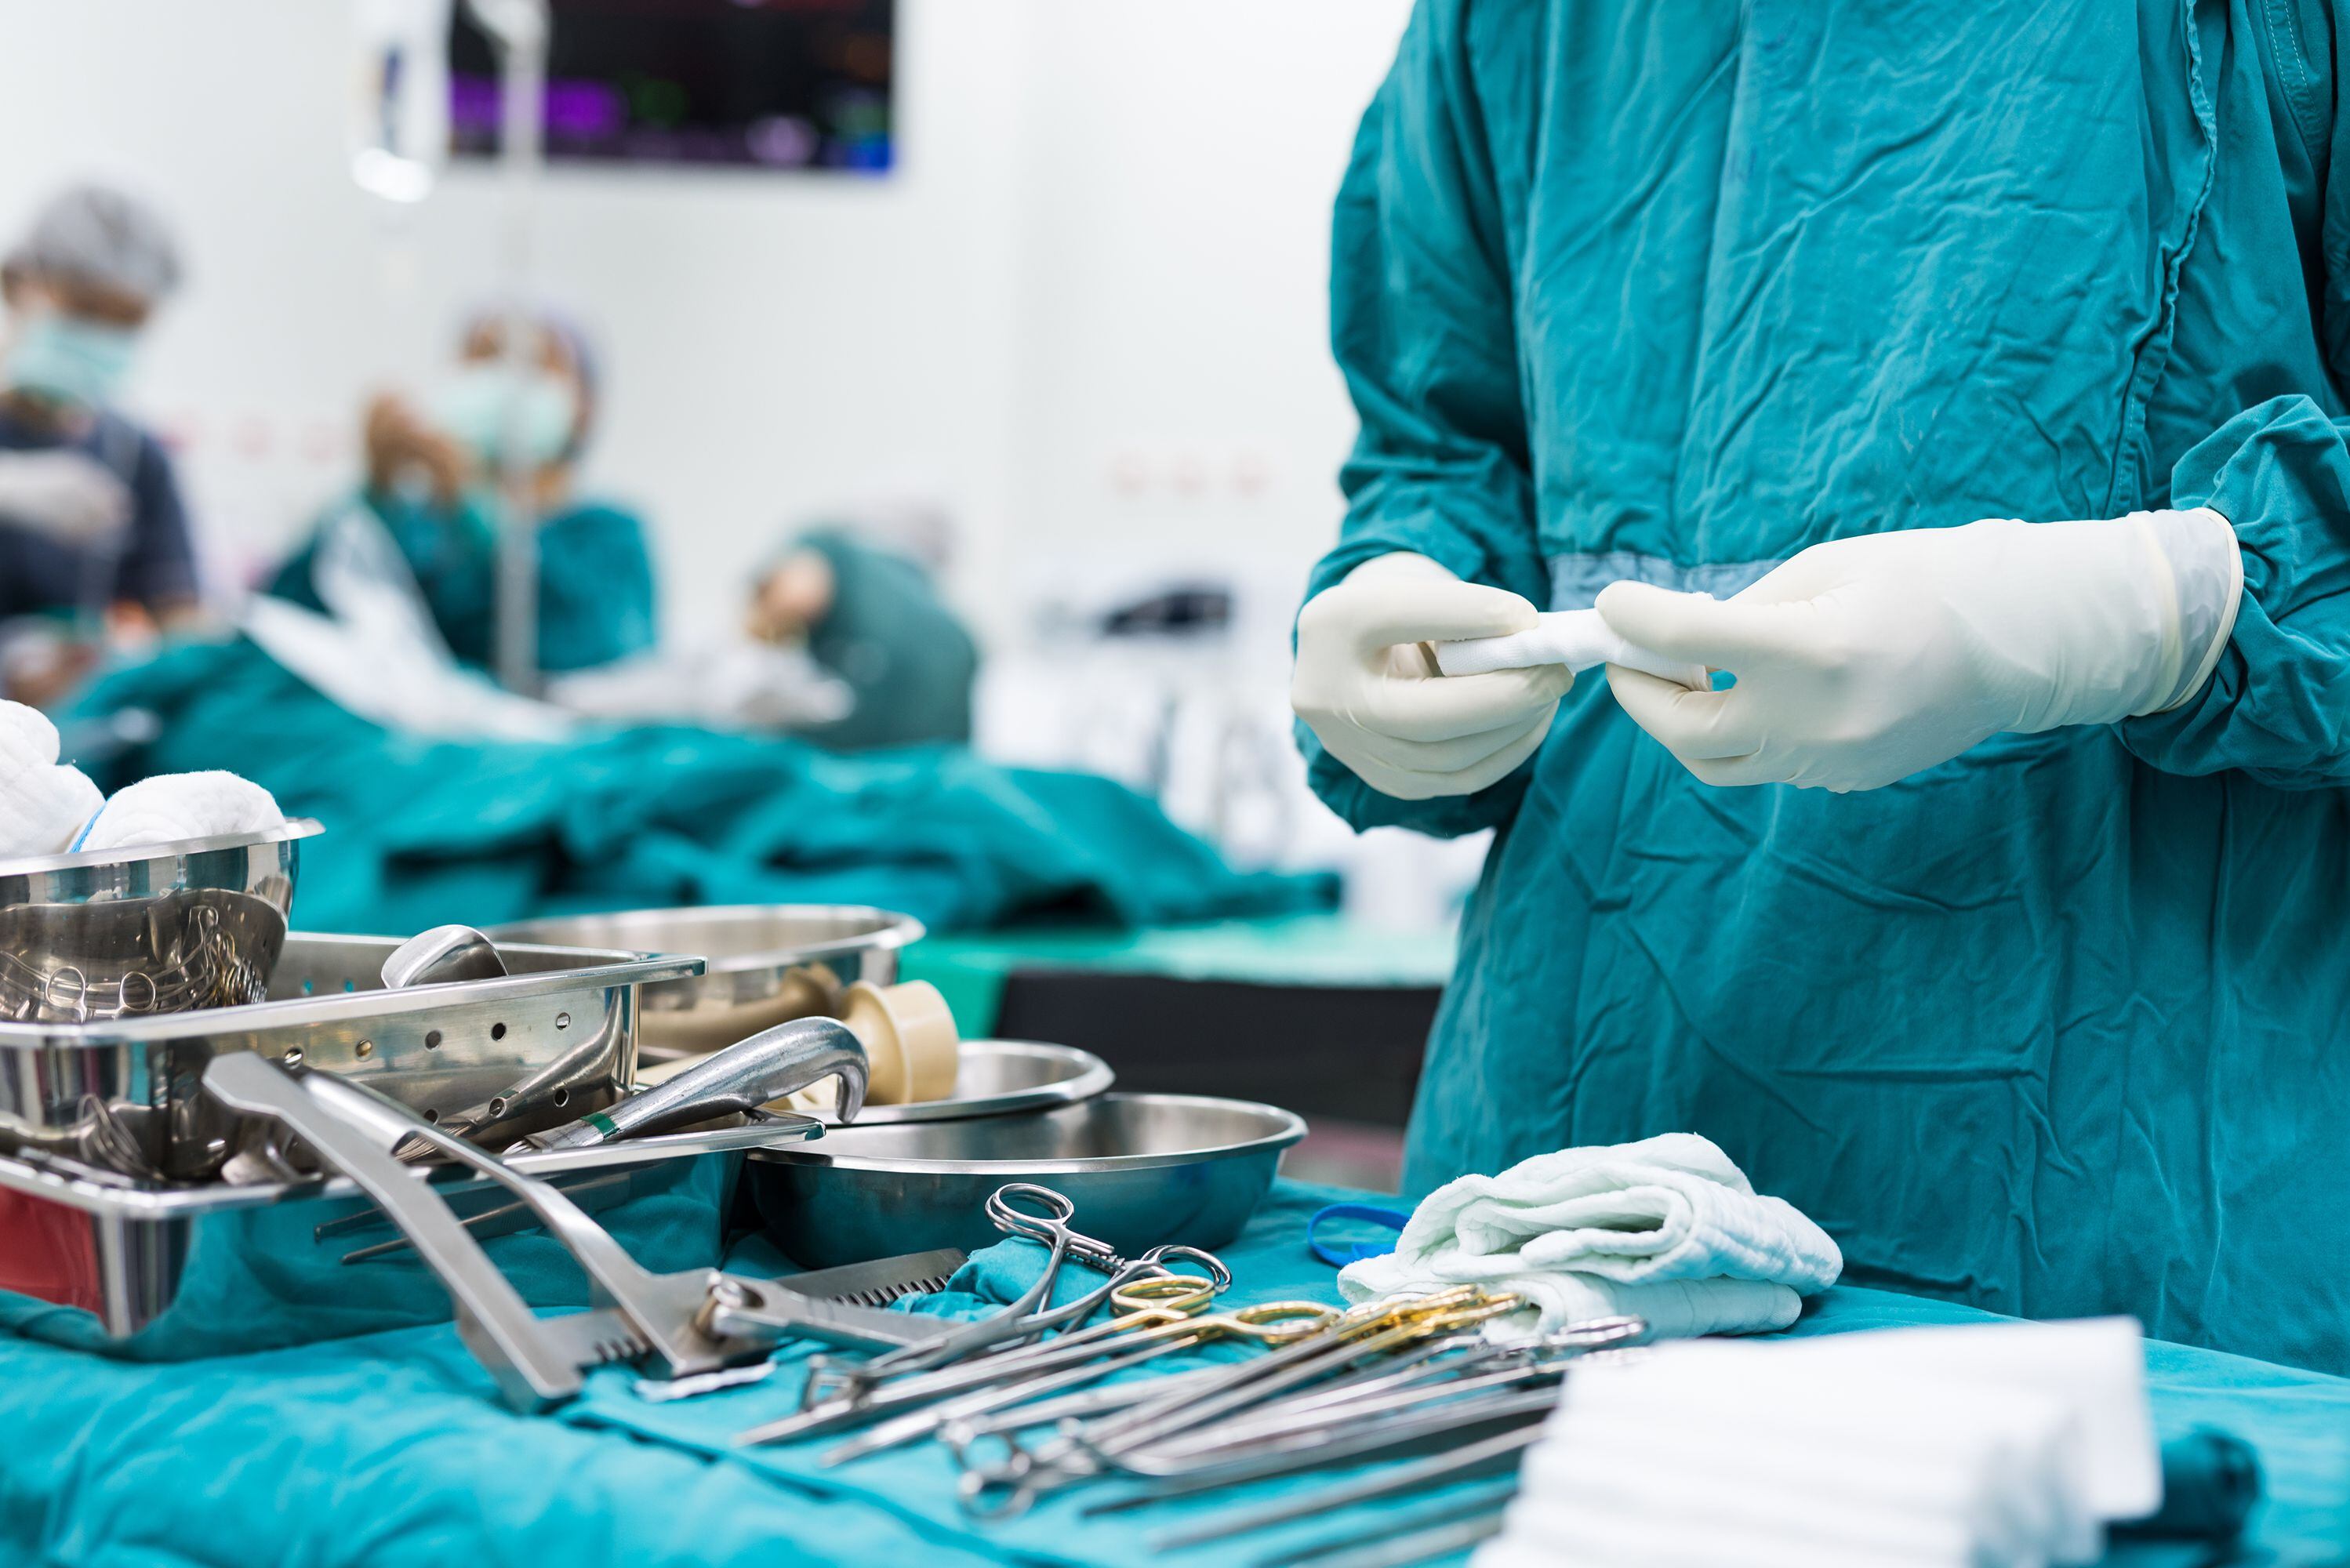 El Hospital San Juan de Dios dejó de trasplantar riñones de donantes cadavéricos en setiembre, luego de que el Ministerio de Salud emitiera una orden sanitaria que cerró su programa de trasplante renal.